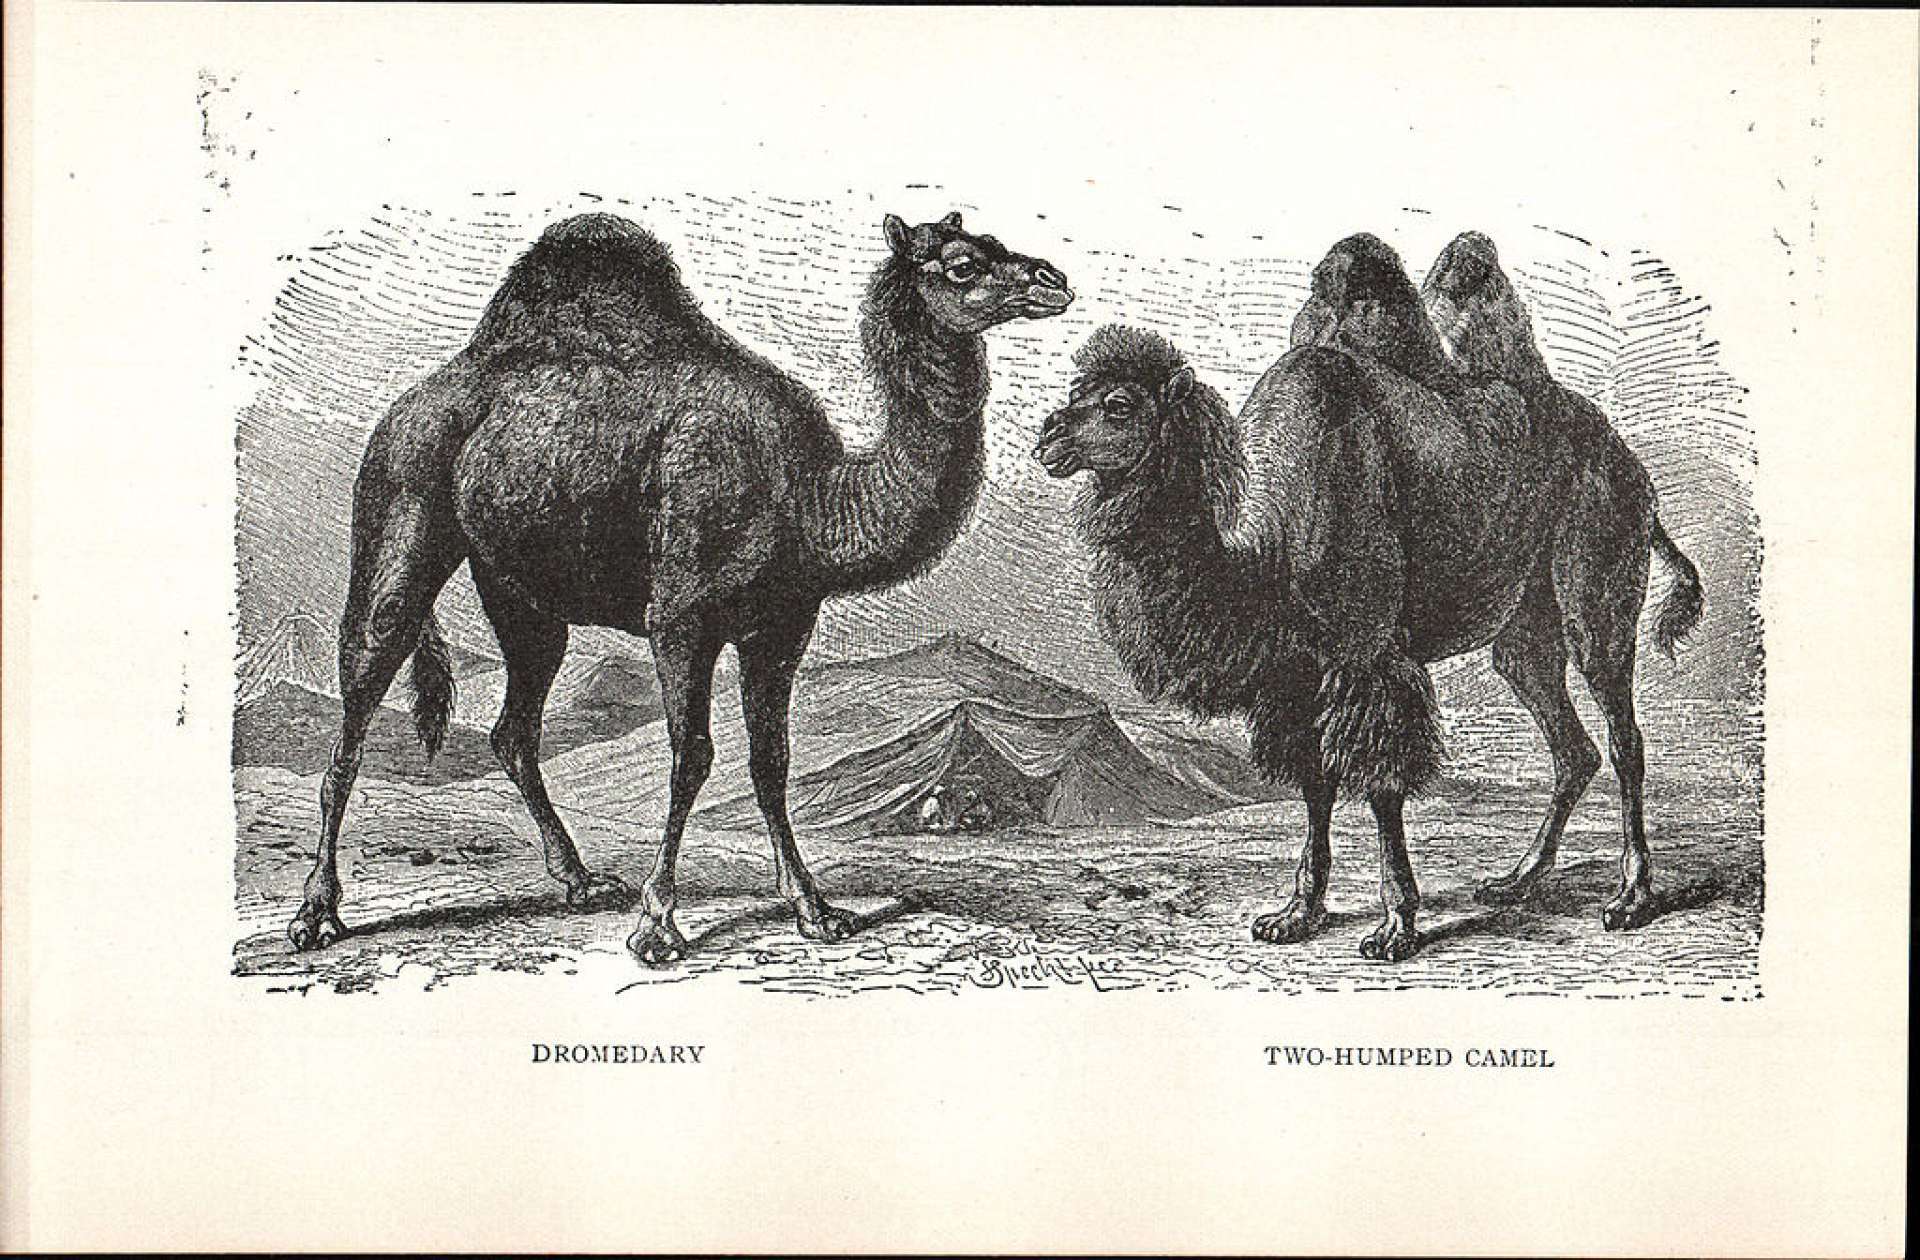 Há duas espécies de camelo: o dromedário (Camelus dromedarius), que possui apenas uma corcova nas costas, e o camelo-bactriano (Camelus bactrianus), que possui duas corcovas